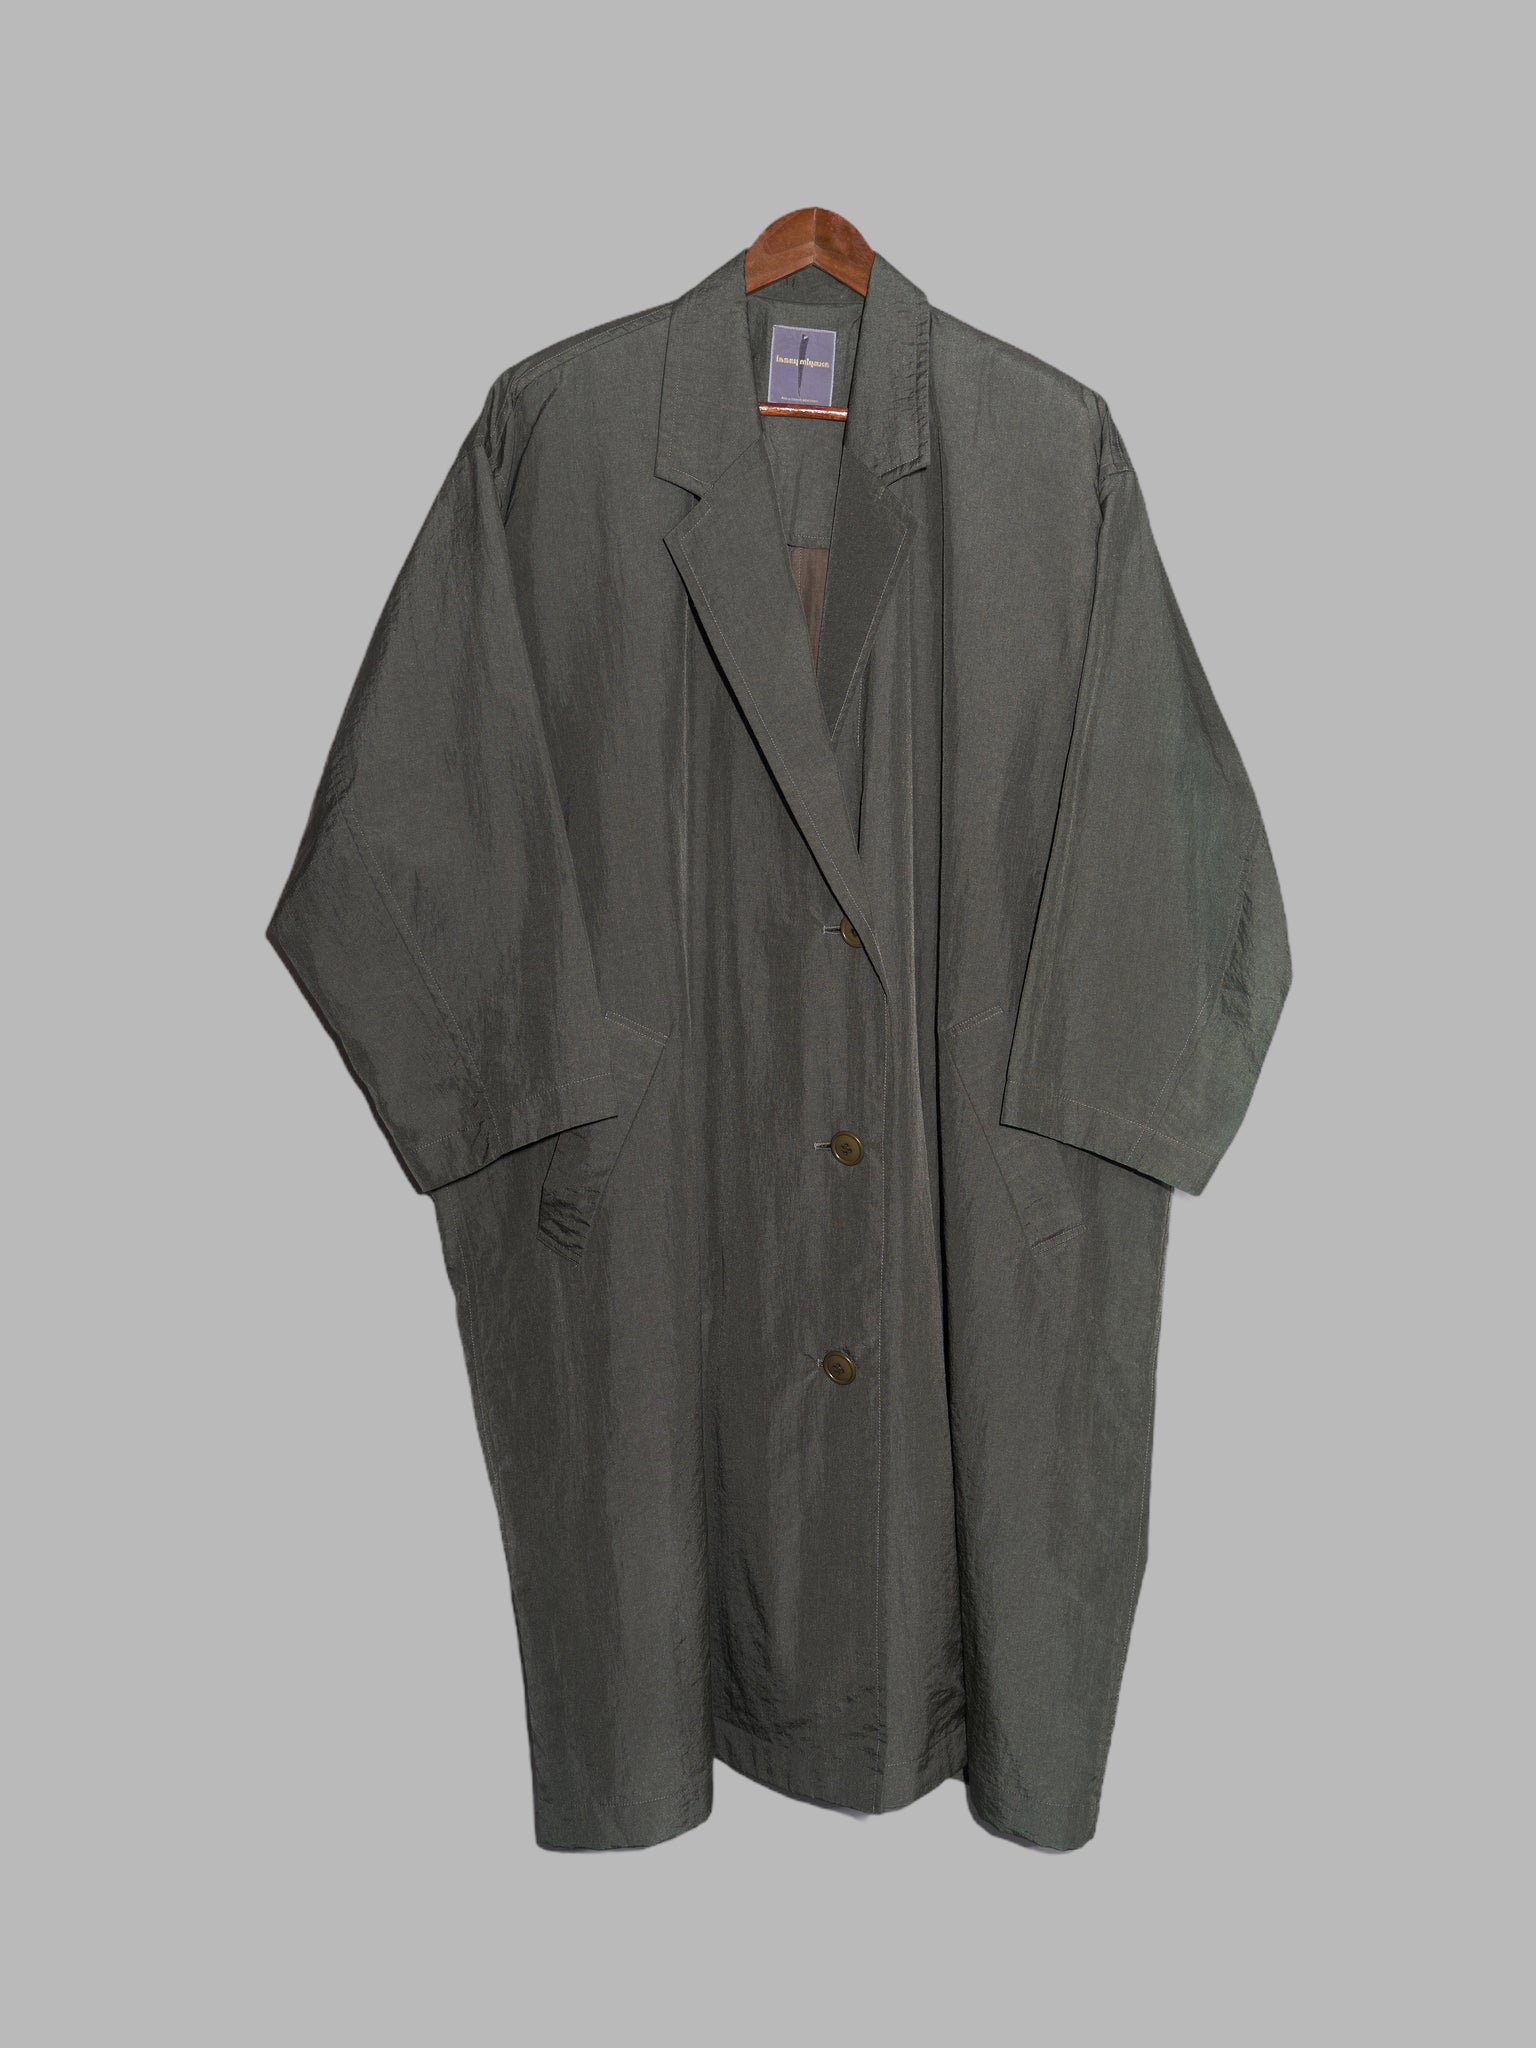 Issey Miyake 1980s khaki cotton nylon oversized rectangle coat - size M